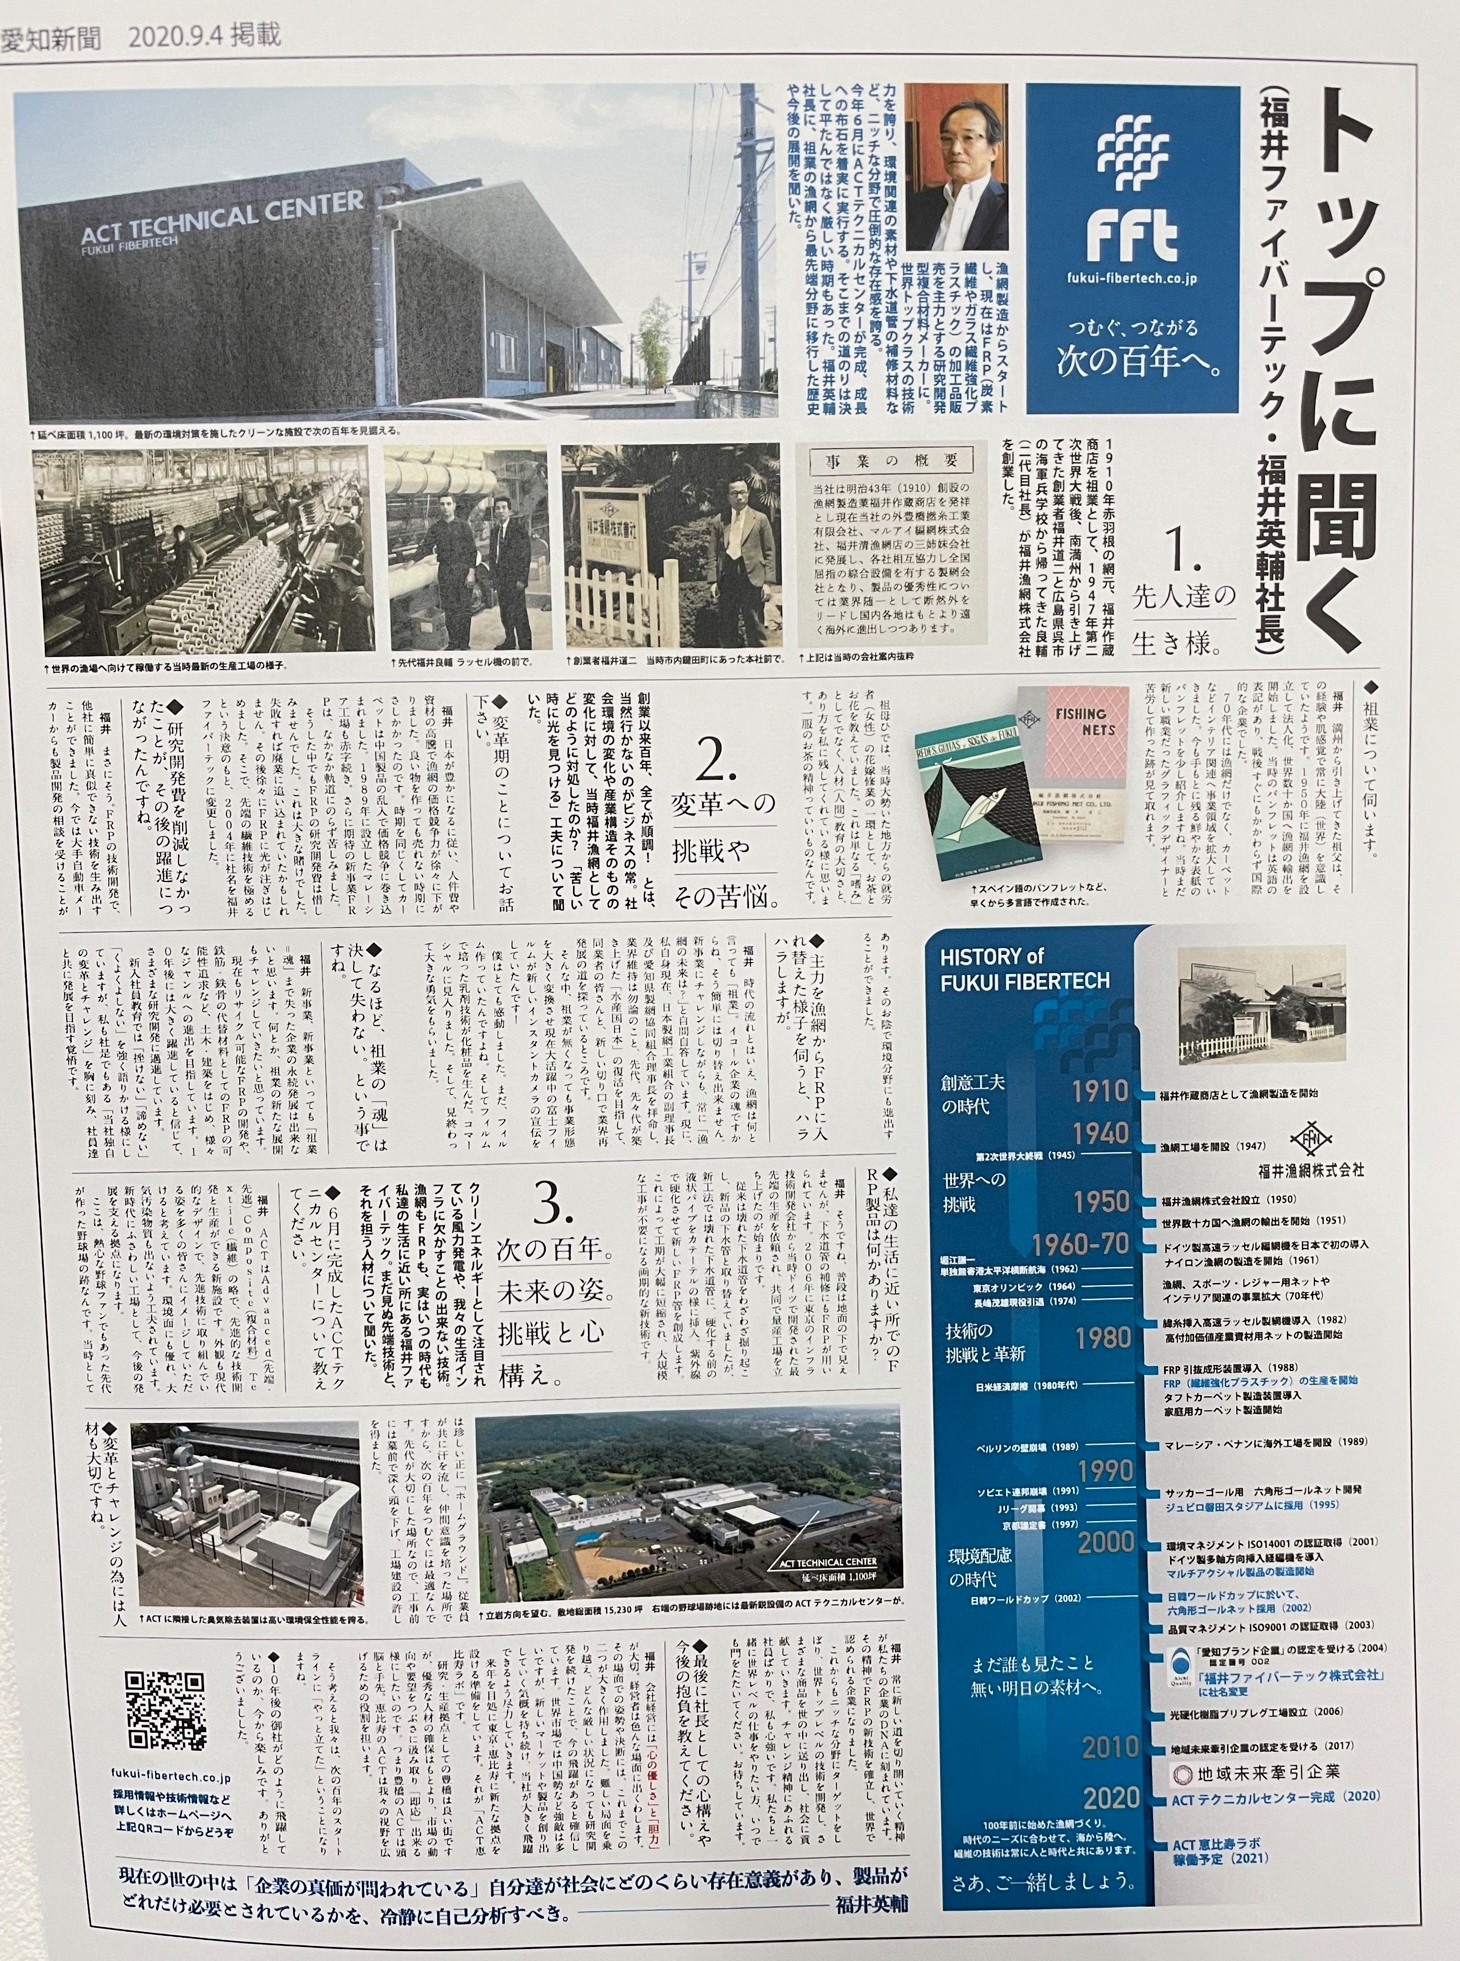 東愛知新聞に掲載されました。